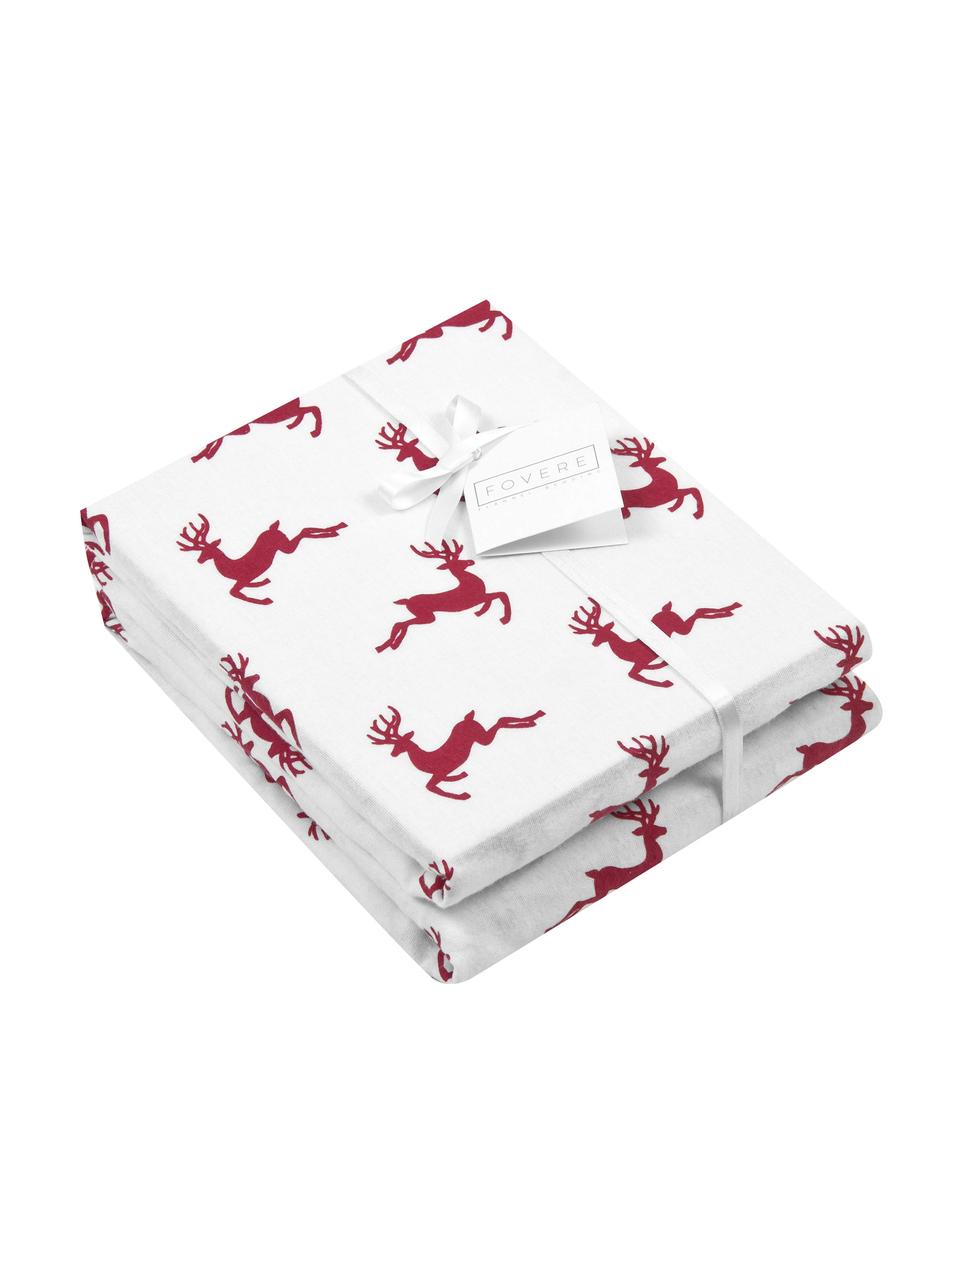 Flanell-Kissenbezüge Rudolph mit Rentieren, 2 Stück, Webart: Flanell Flanell ist ein k, Rot, Ecru, 40 x 80 cm